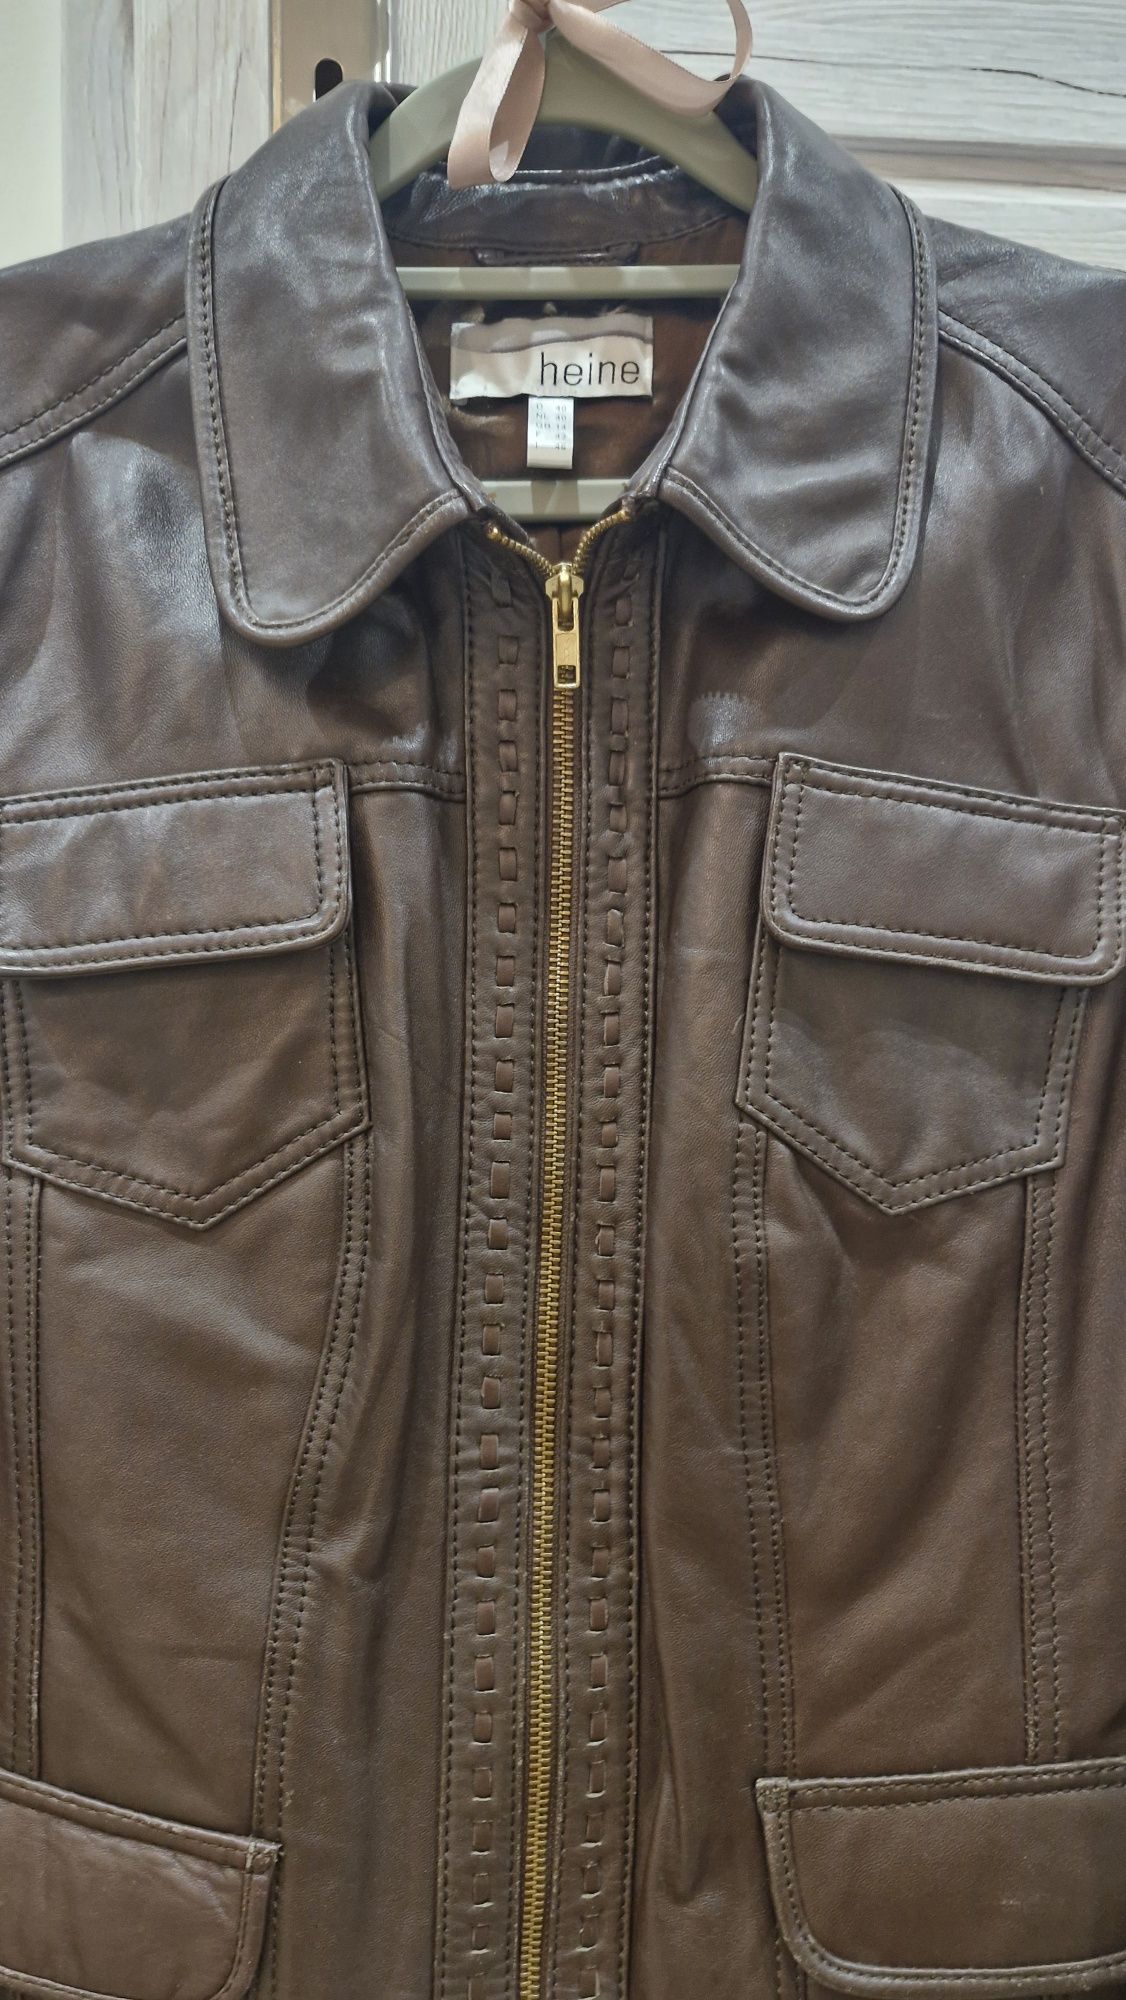 Skórzana kurtka Ramoneska czekoladowy brąz skóra naturalna 100%